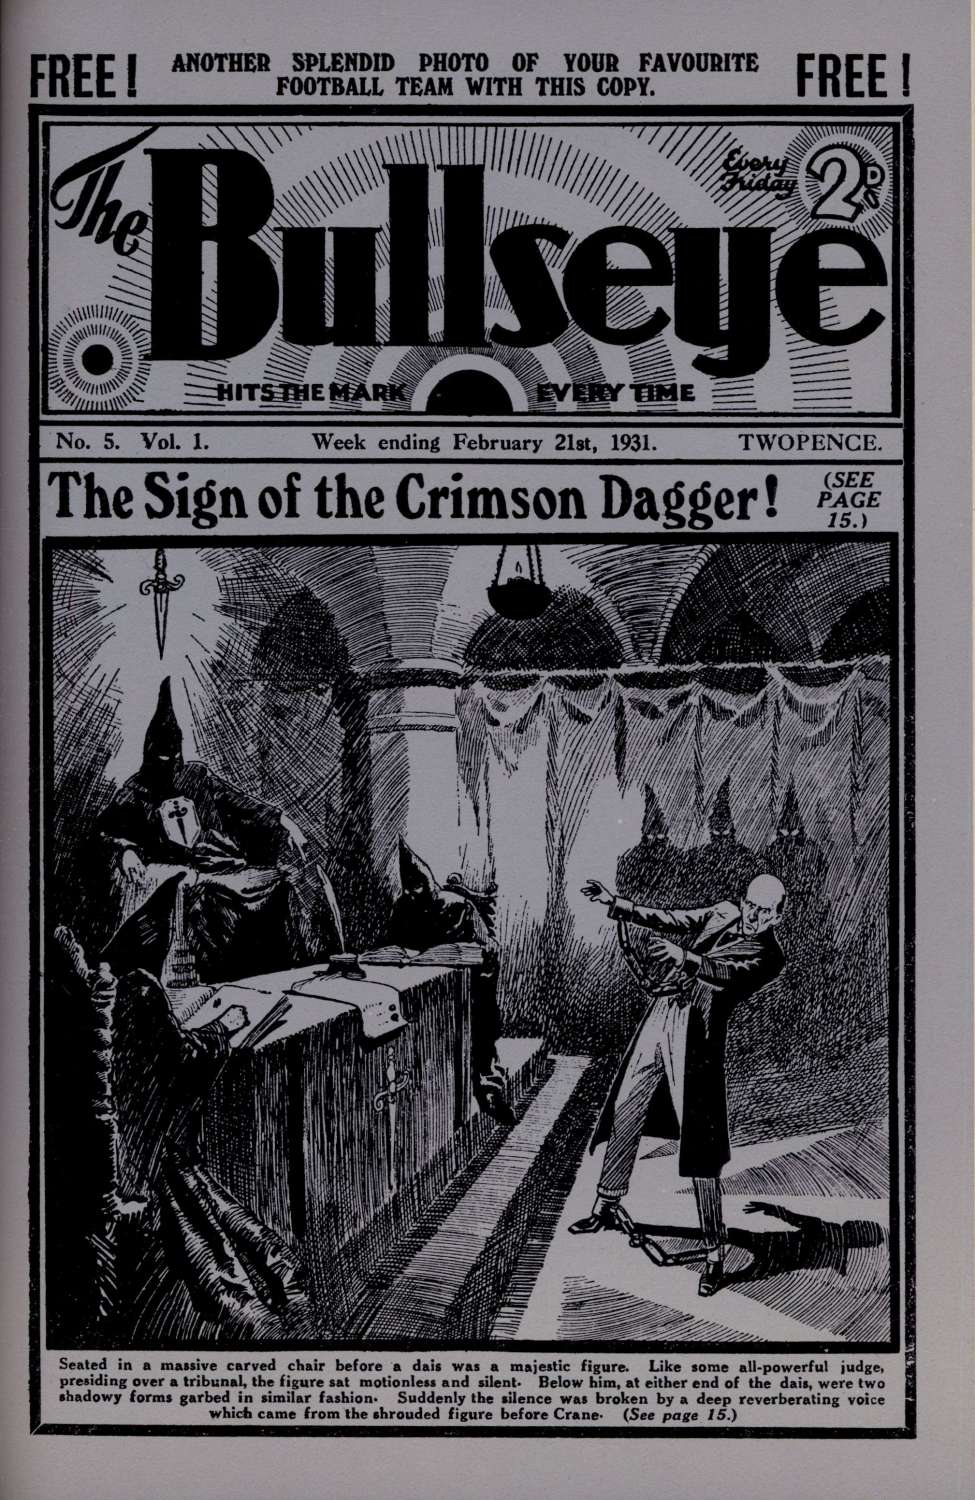 Book Cover For The Bullseye v1 5 - The Sign of the Crimson Dagger!